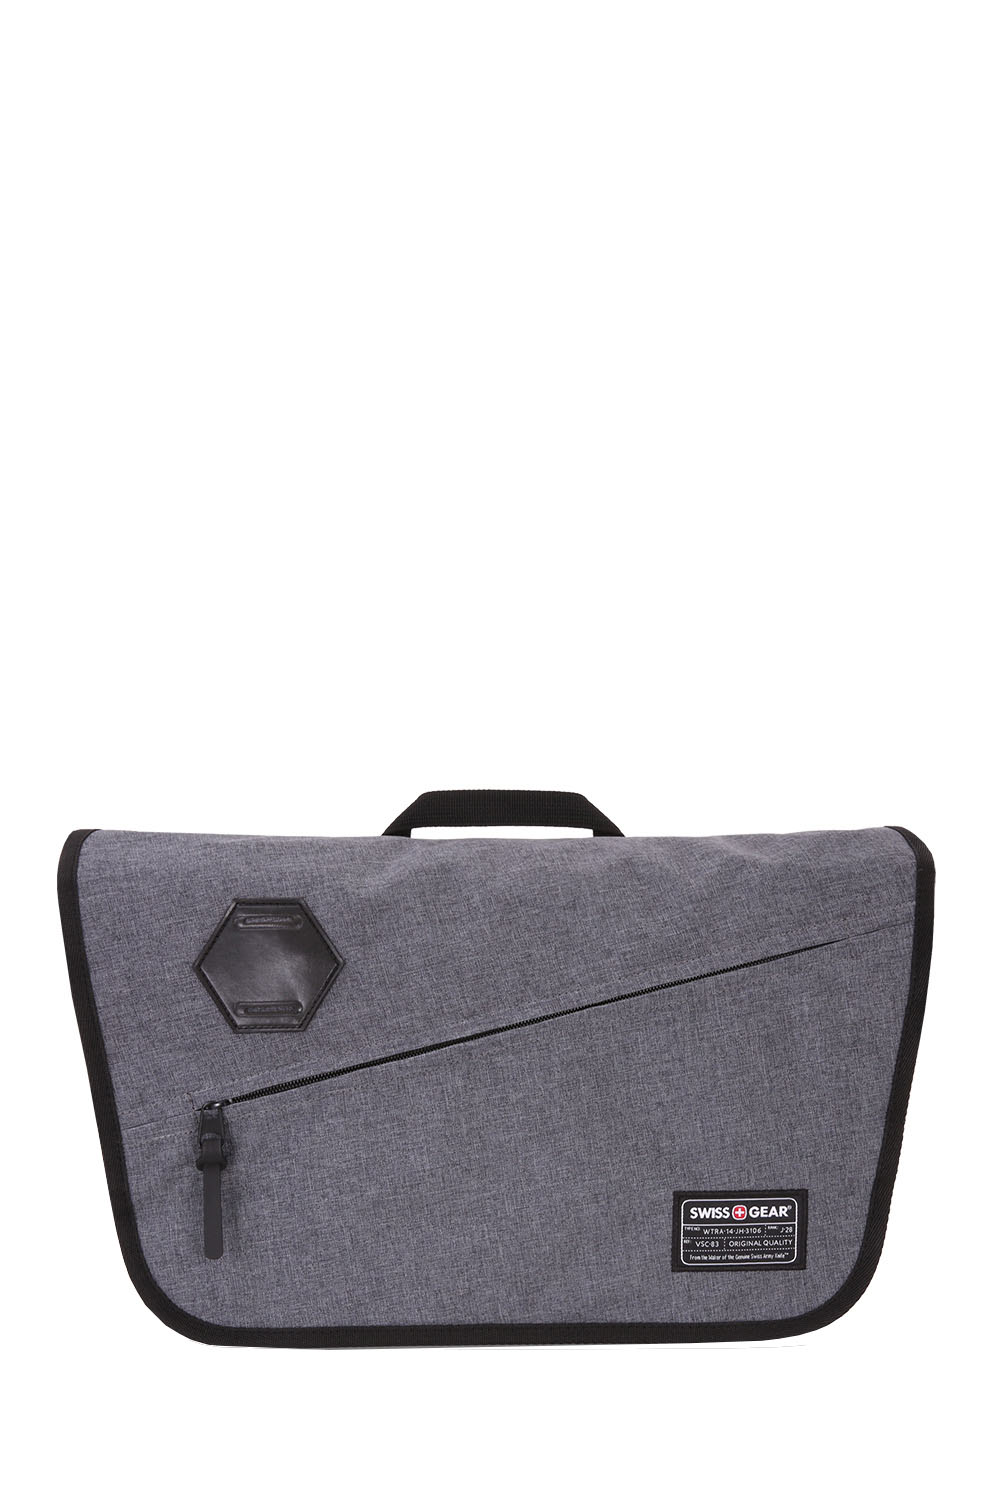 Swissgear 5320 Laptop Messenger Bag - Heather Gray